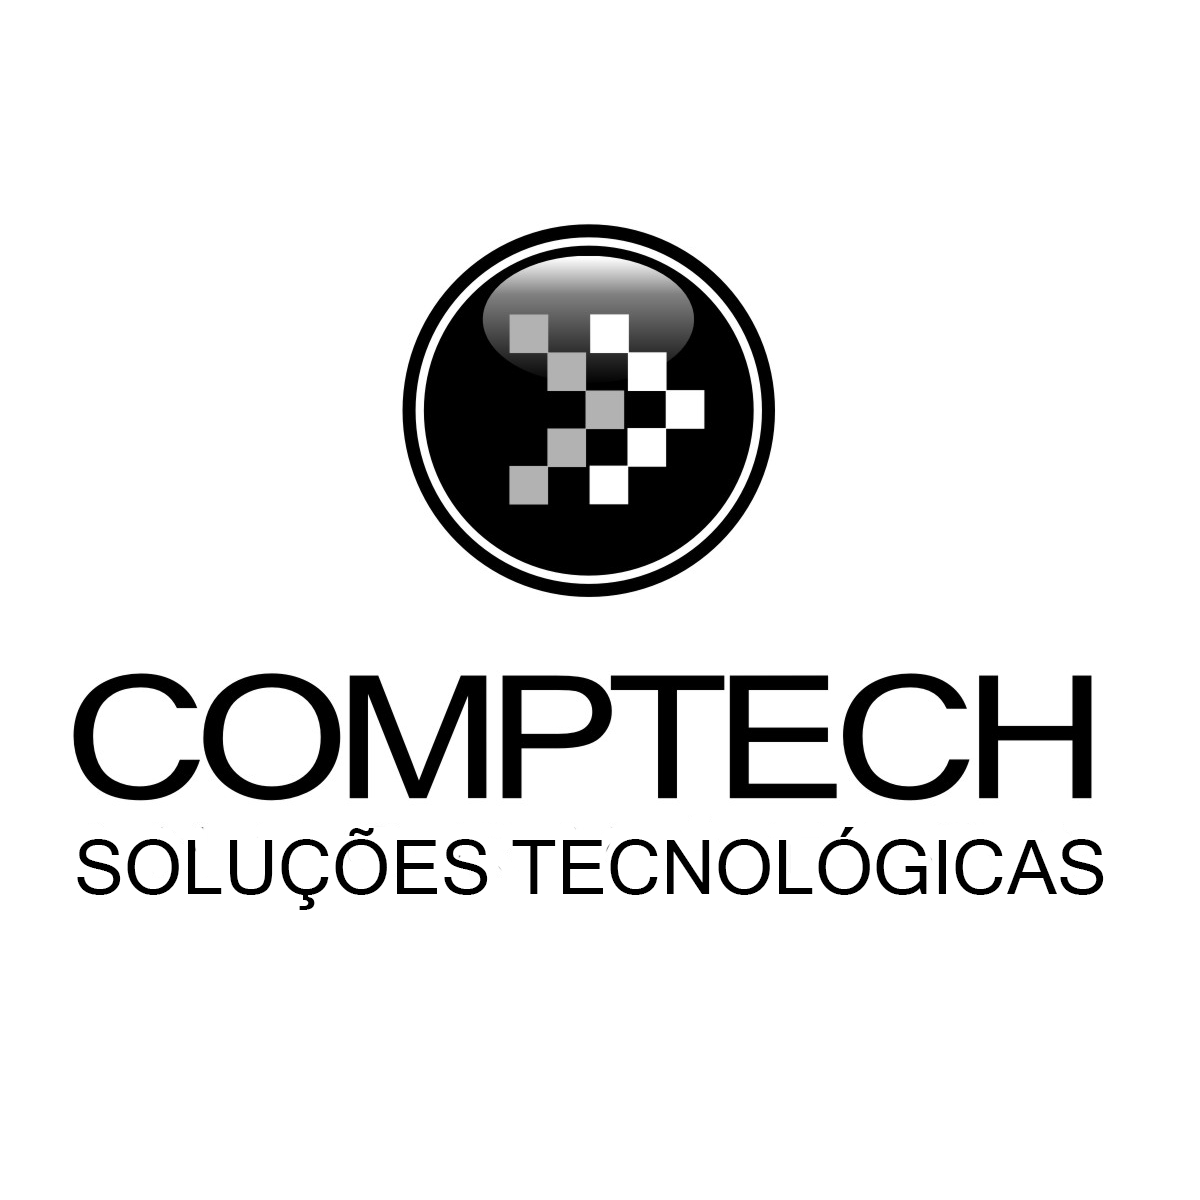 Comptech Soluções Tecnológicas logo